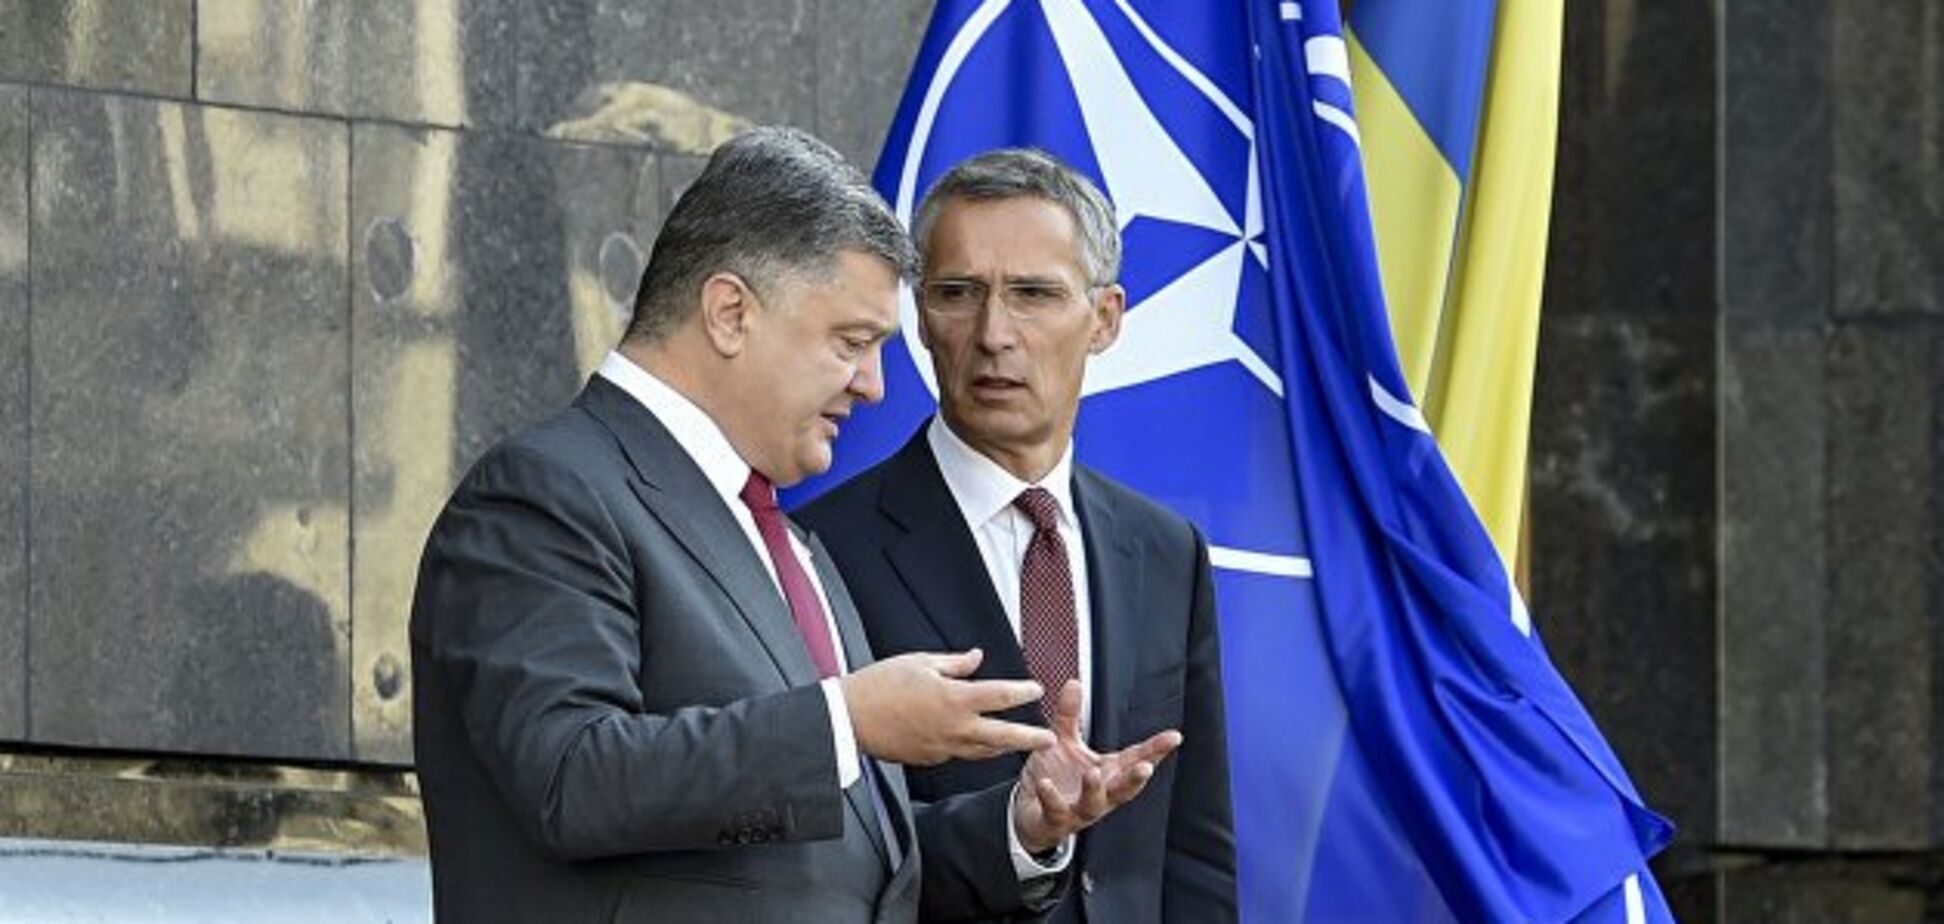 Порошенко провел срочные переговоры с генсеком НАТО: подробности